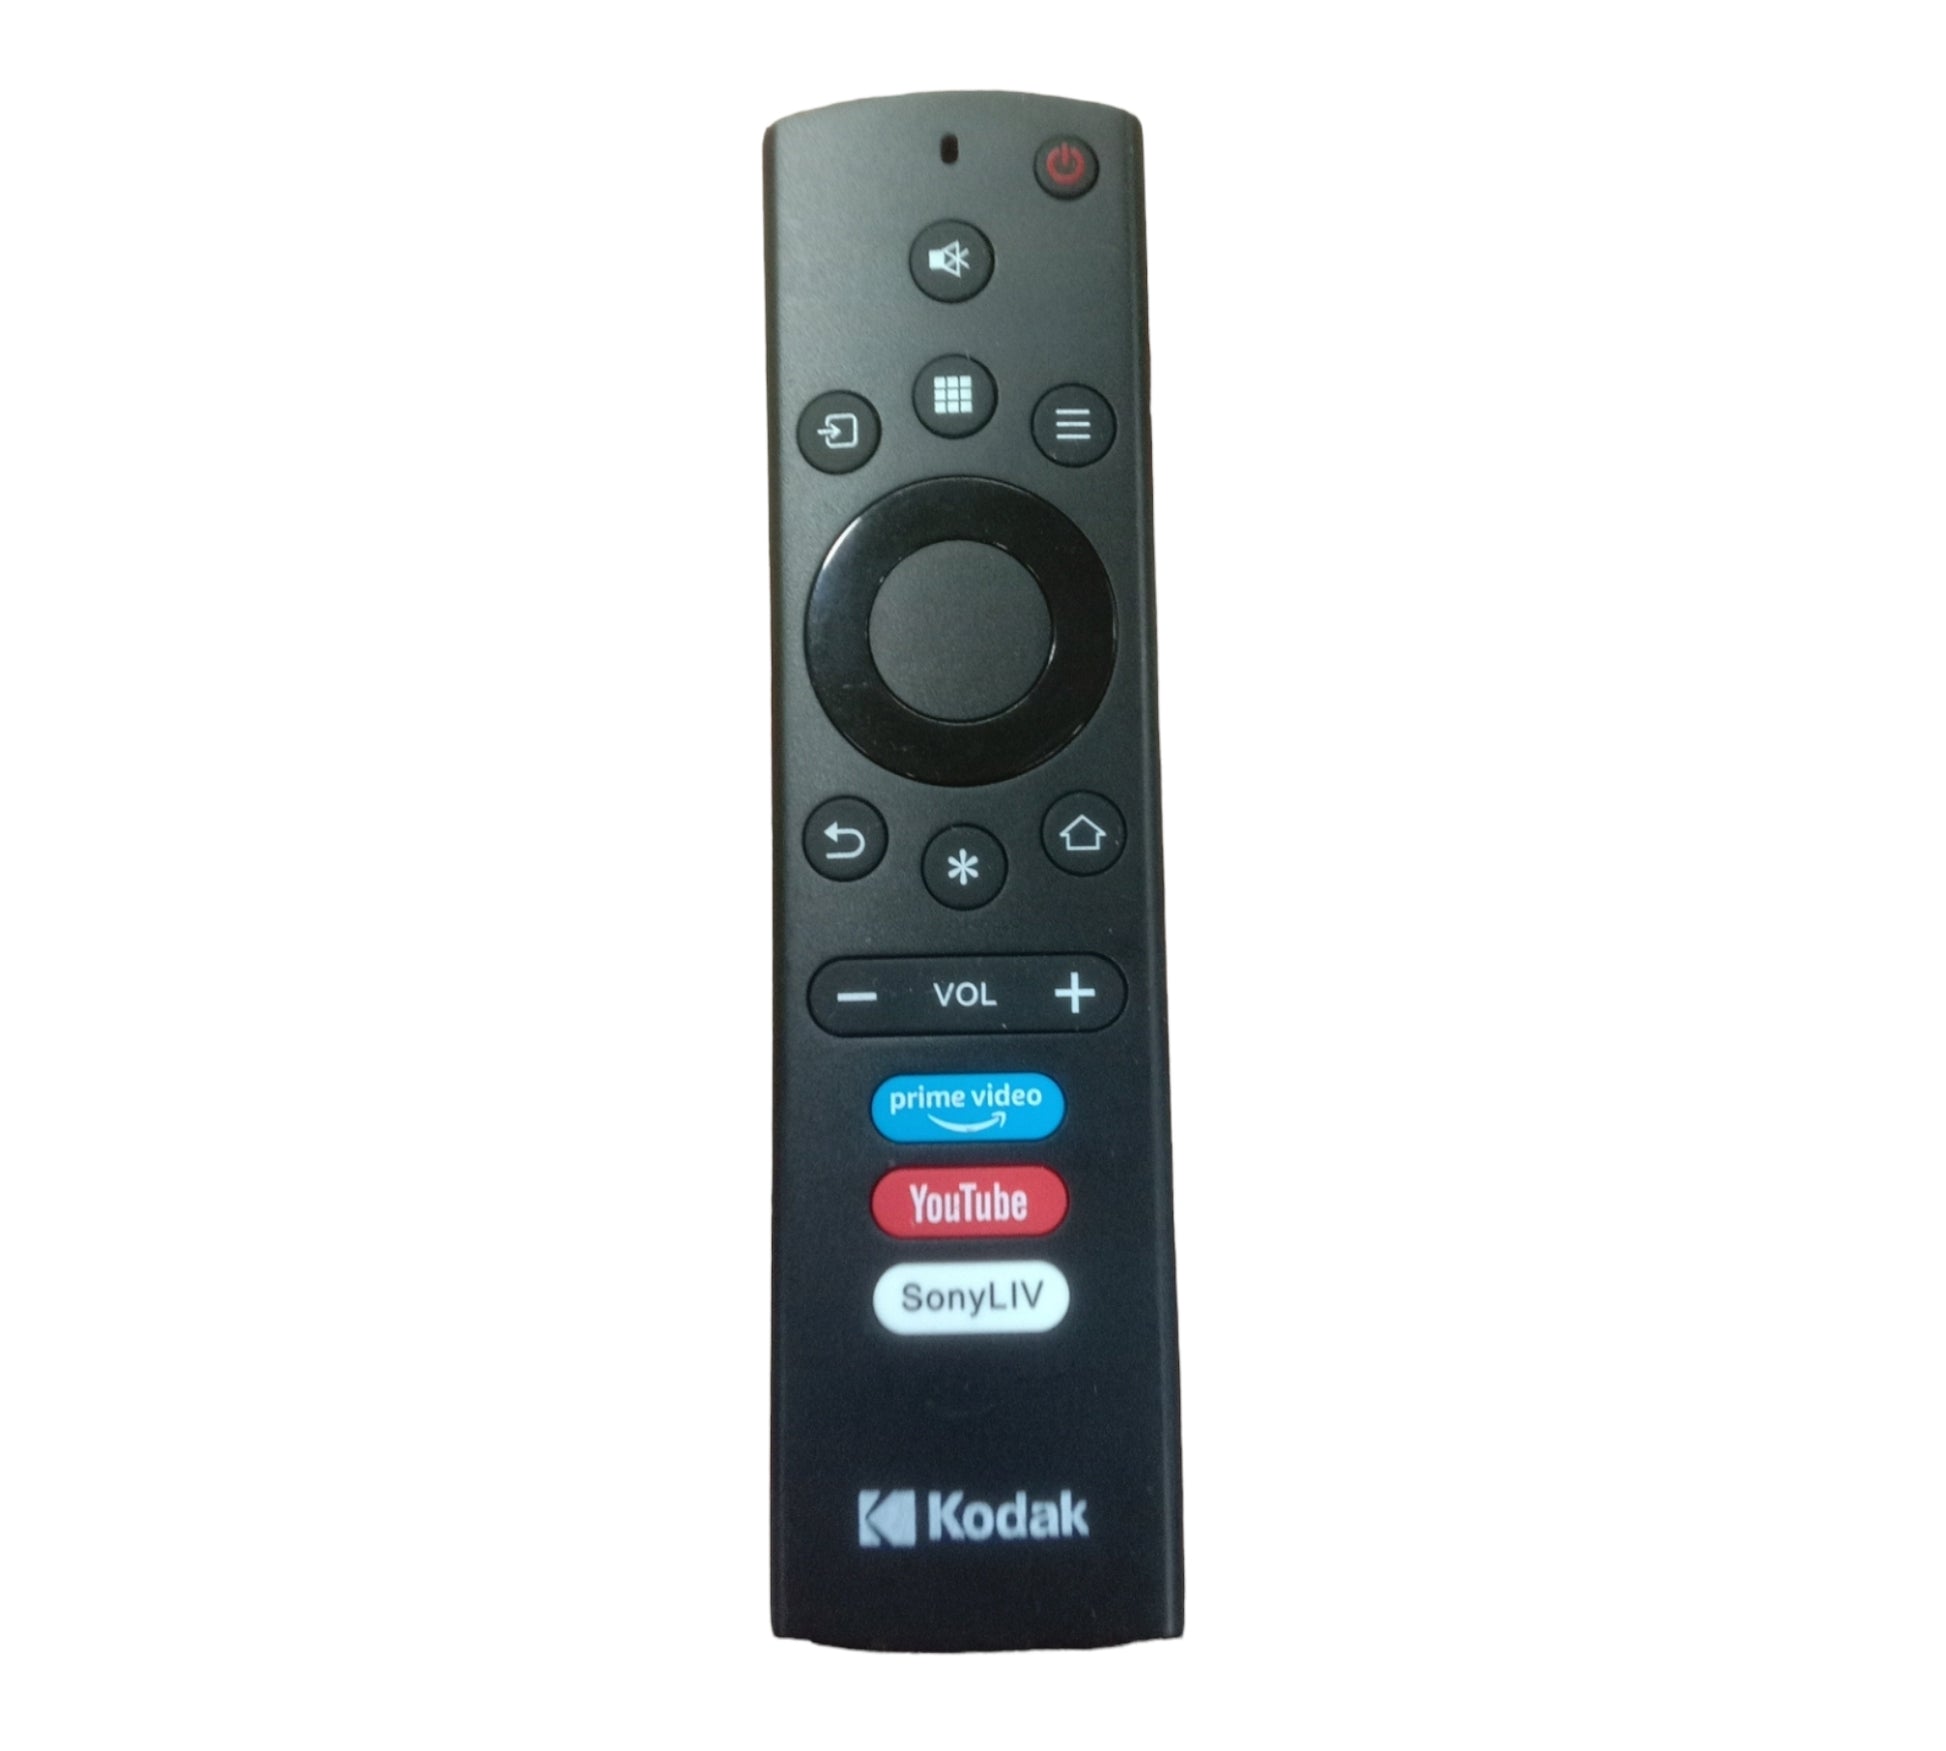 kodak smart tv remote control Youtube,prime video,sony liv - Faritha